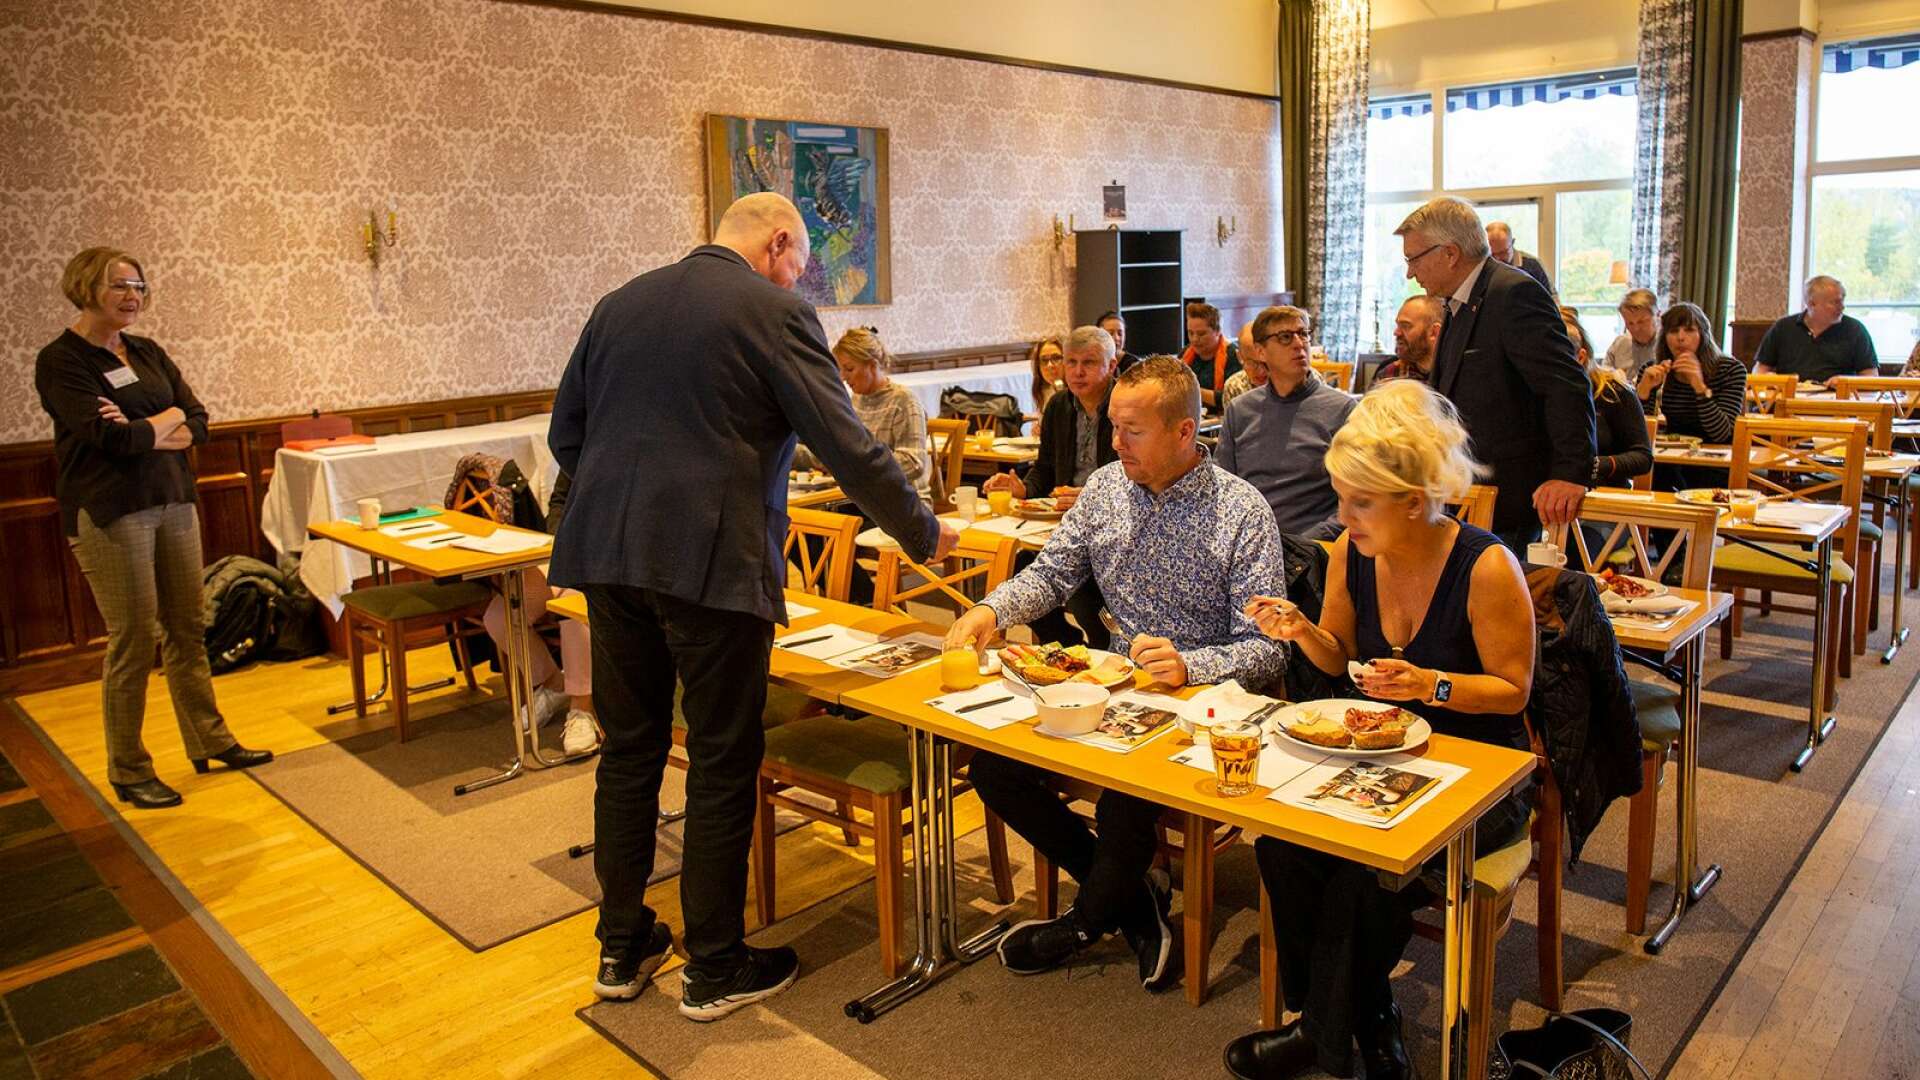 Bengtsfors kommun anordnade en näringslivsfrukost med representanter från lokala företag, stora som små. 